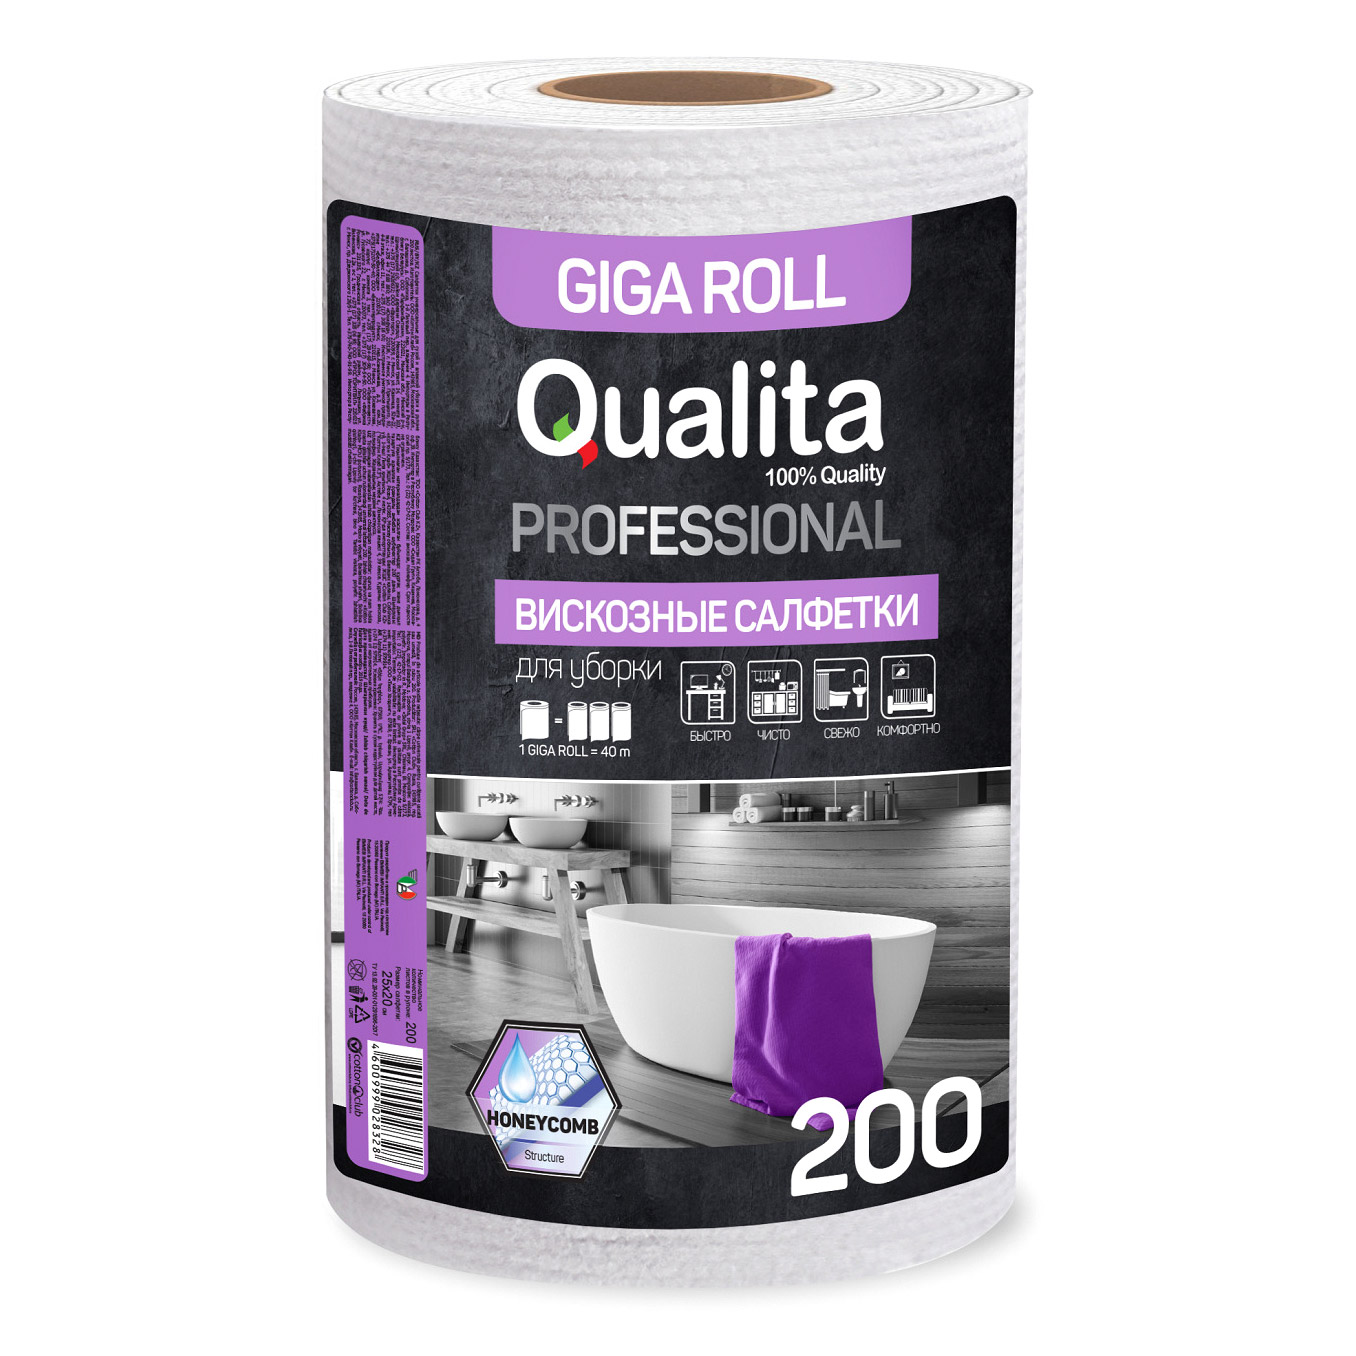 салфетки qualita giga roll вискозные в рулоне д уборки 200 шт Салфетки для уборки Qualita универсальные 200 шт